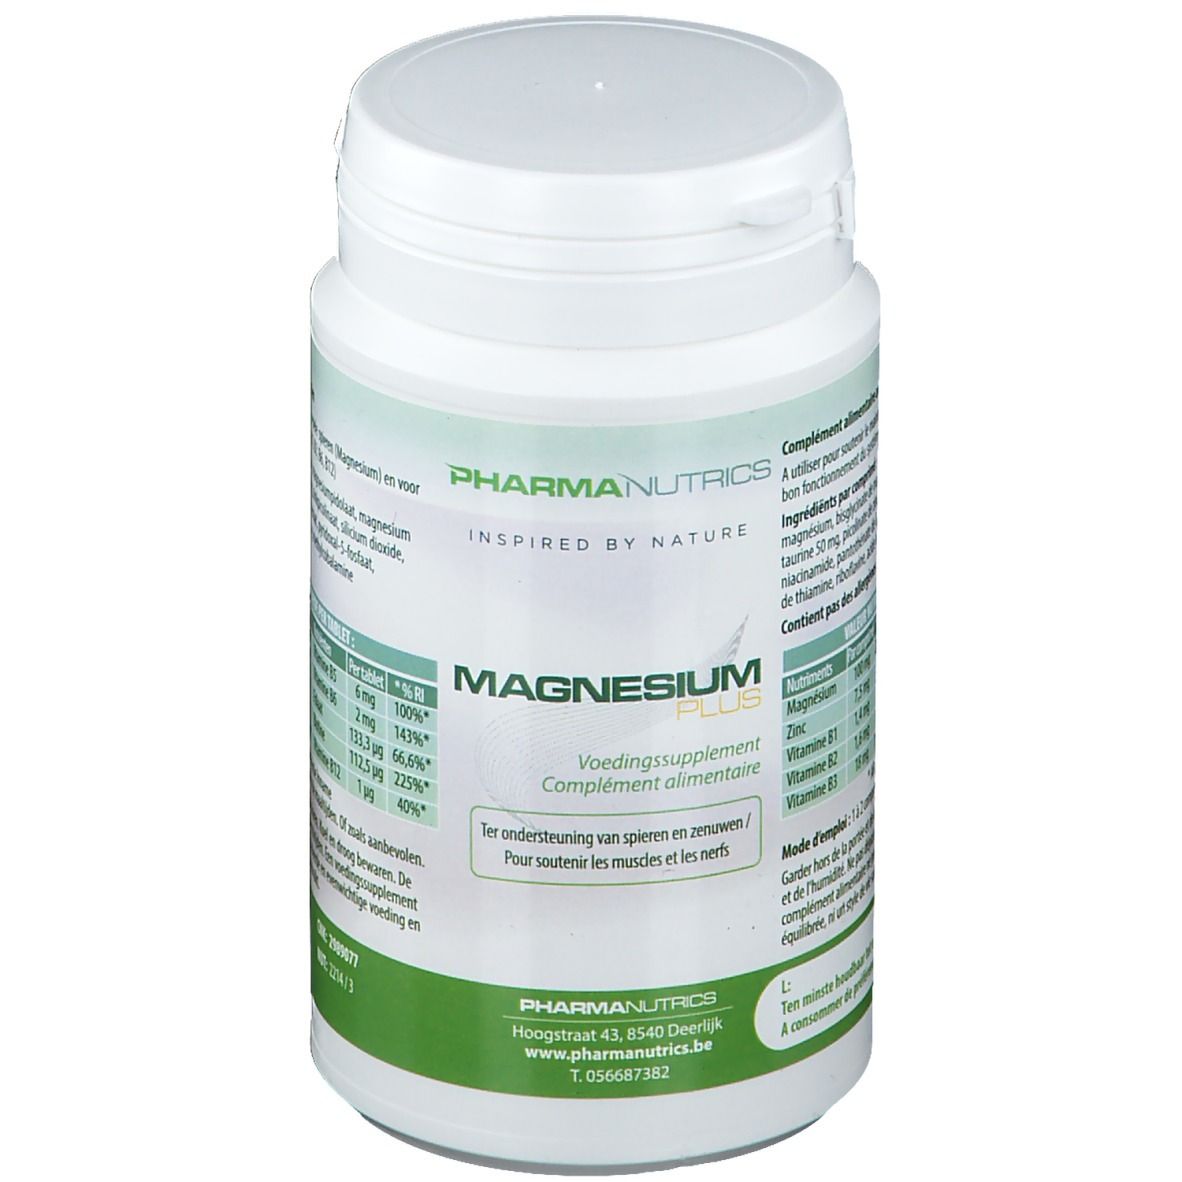 Pharmanutrics Magnesium Plus